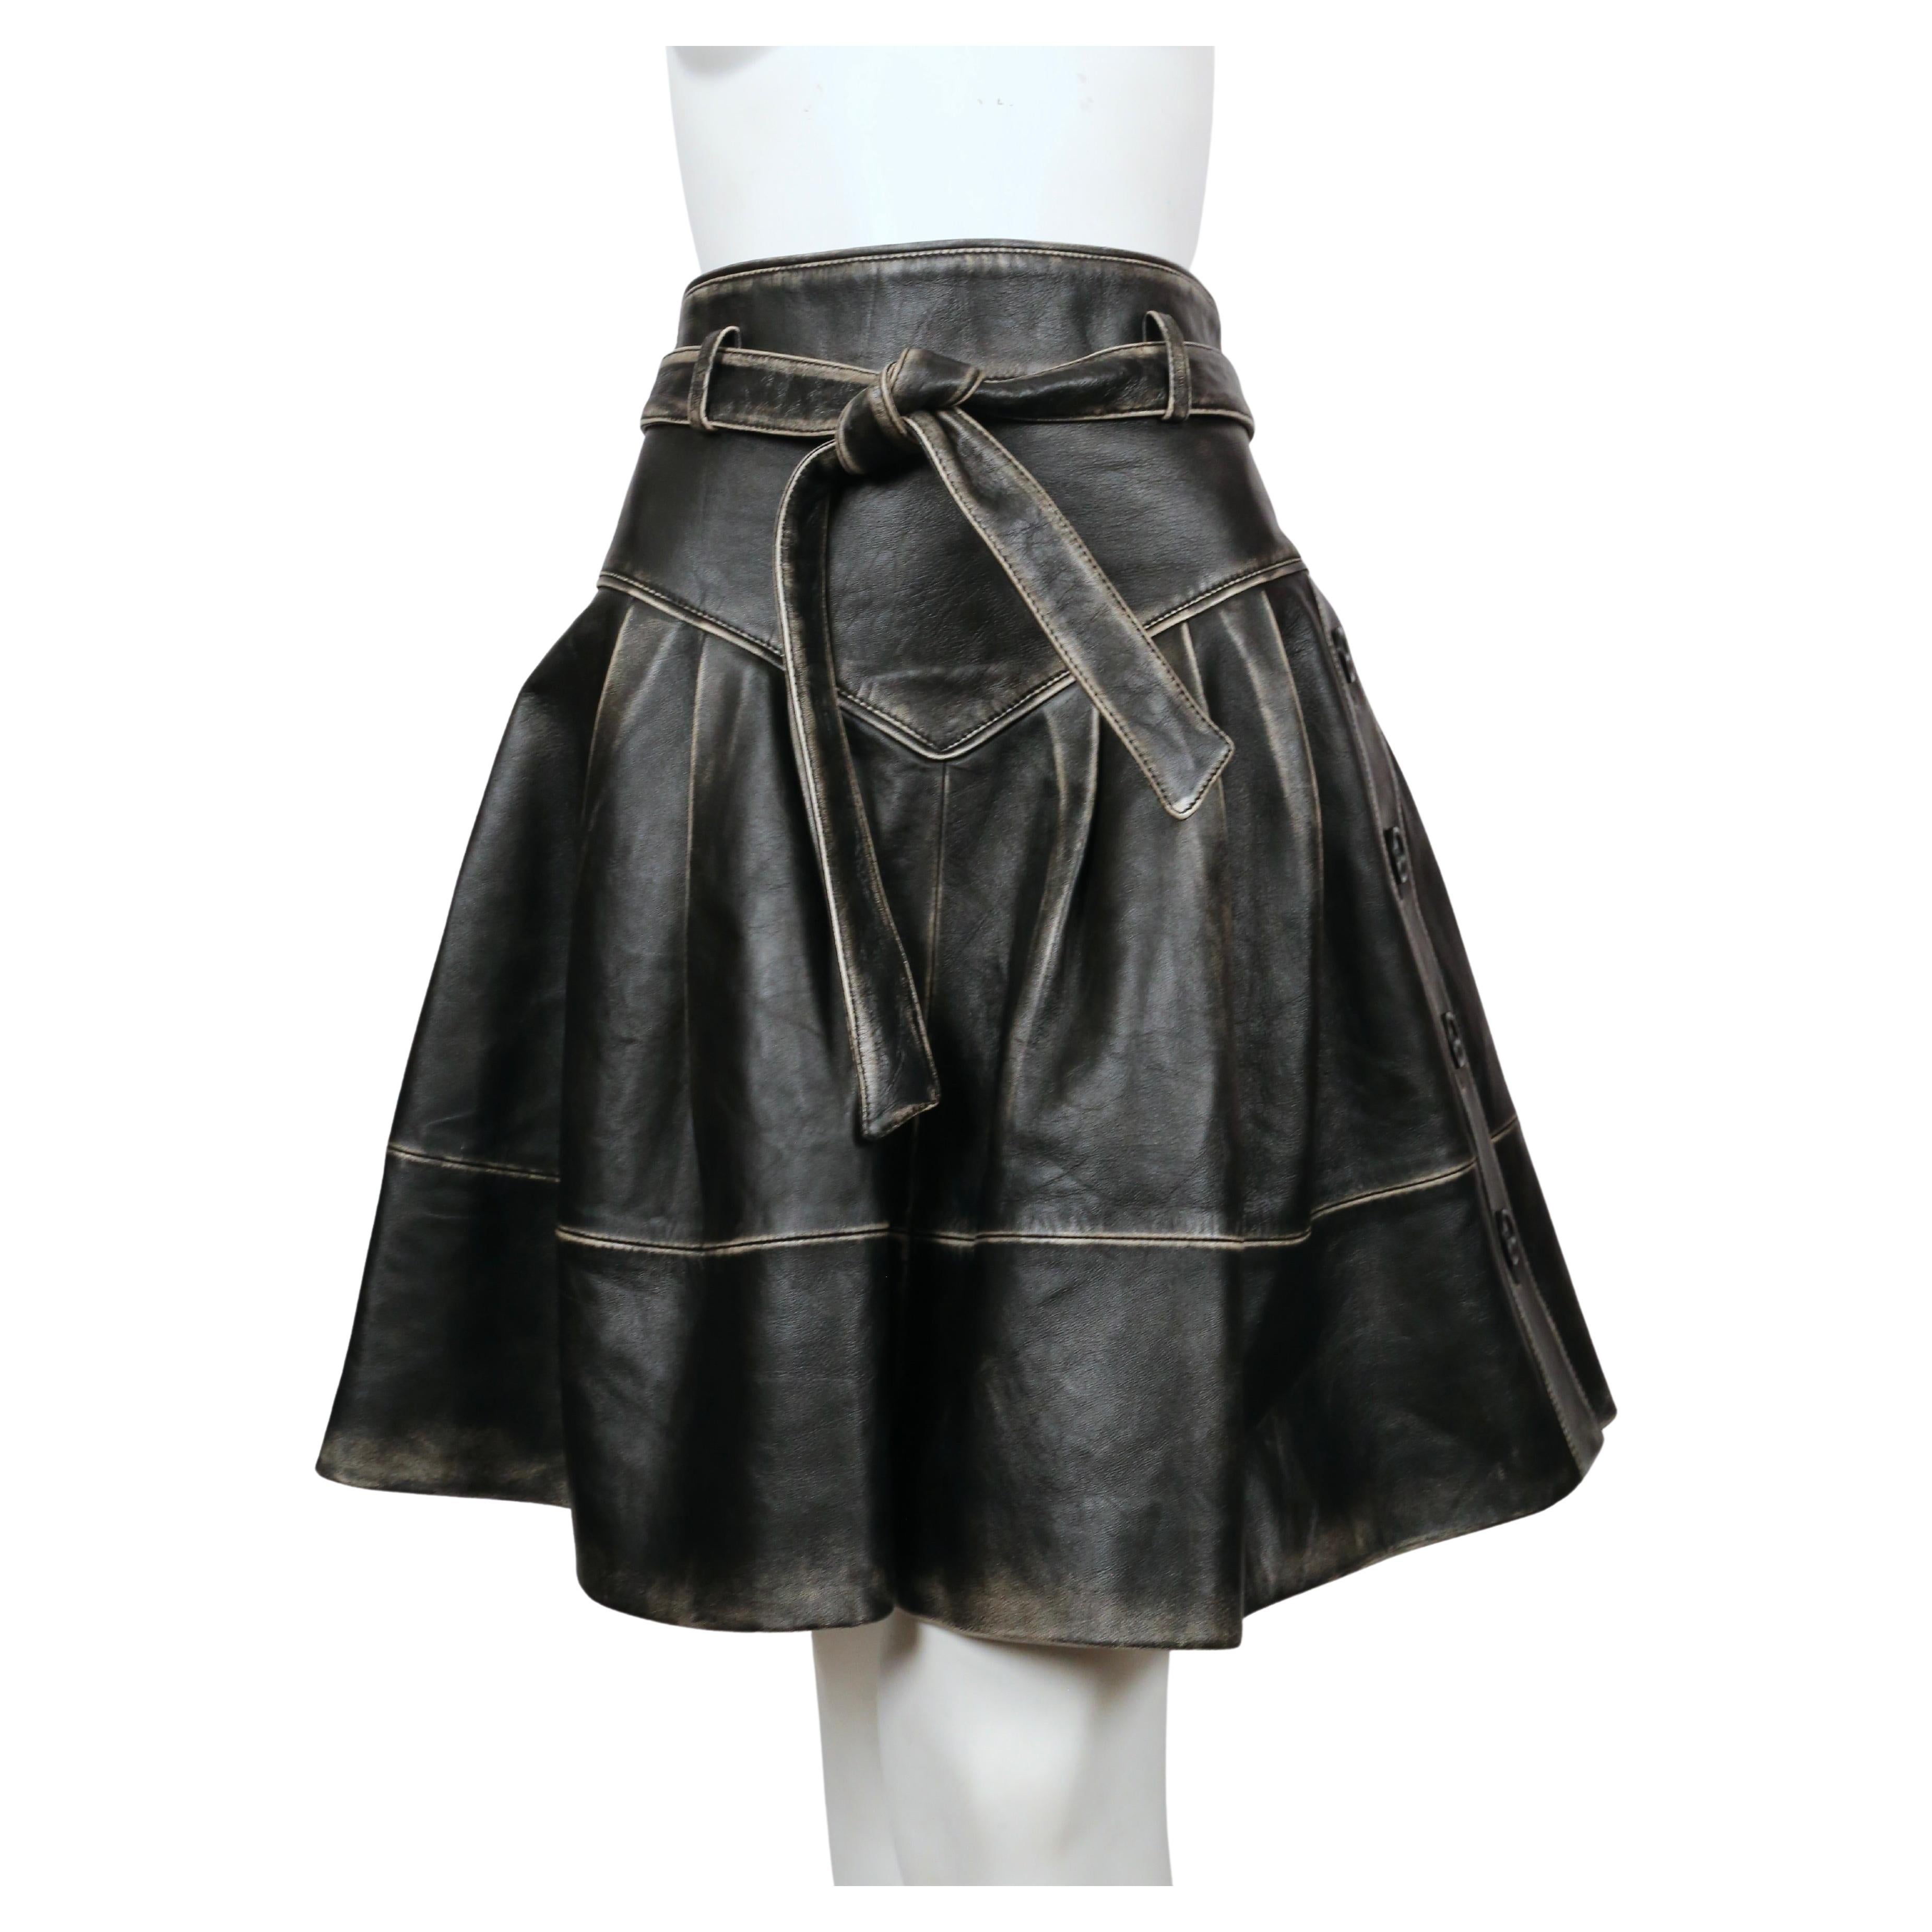 Jupe en cuir noir-marron vieilli avec ceinture et boutons latéraux, Miu Miu, pré automne 2018. Le Label est étiqueté comme une taille italienne 42. Mesures approximatives : taille 28